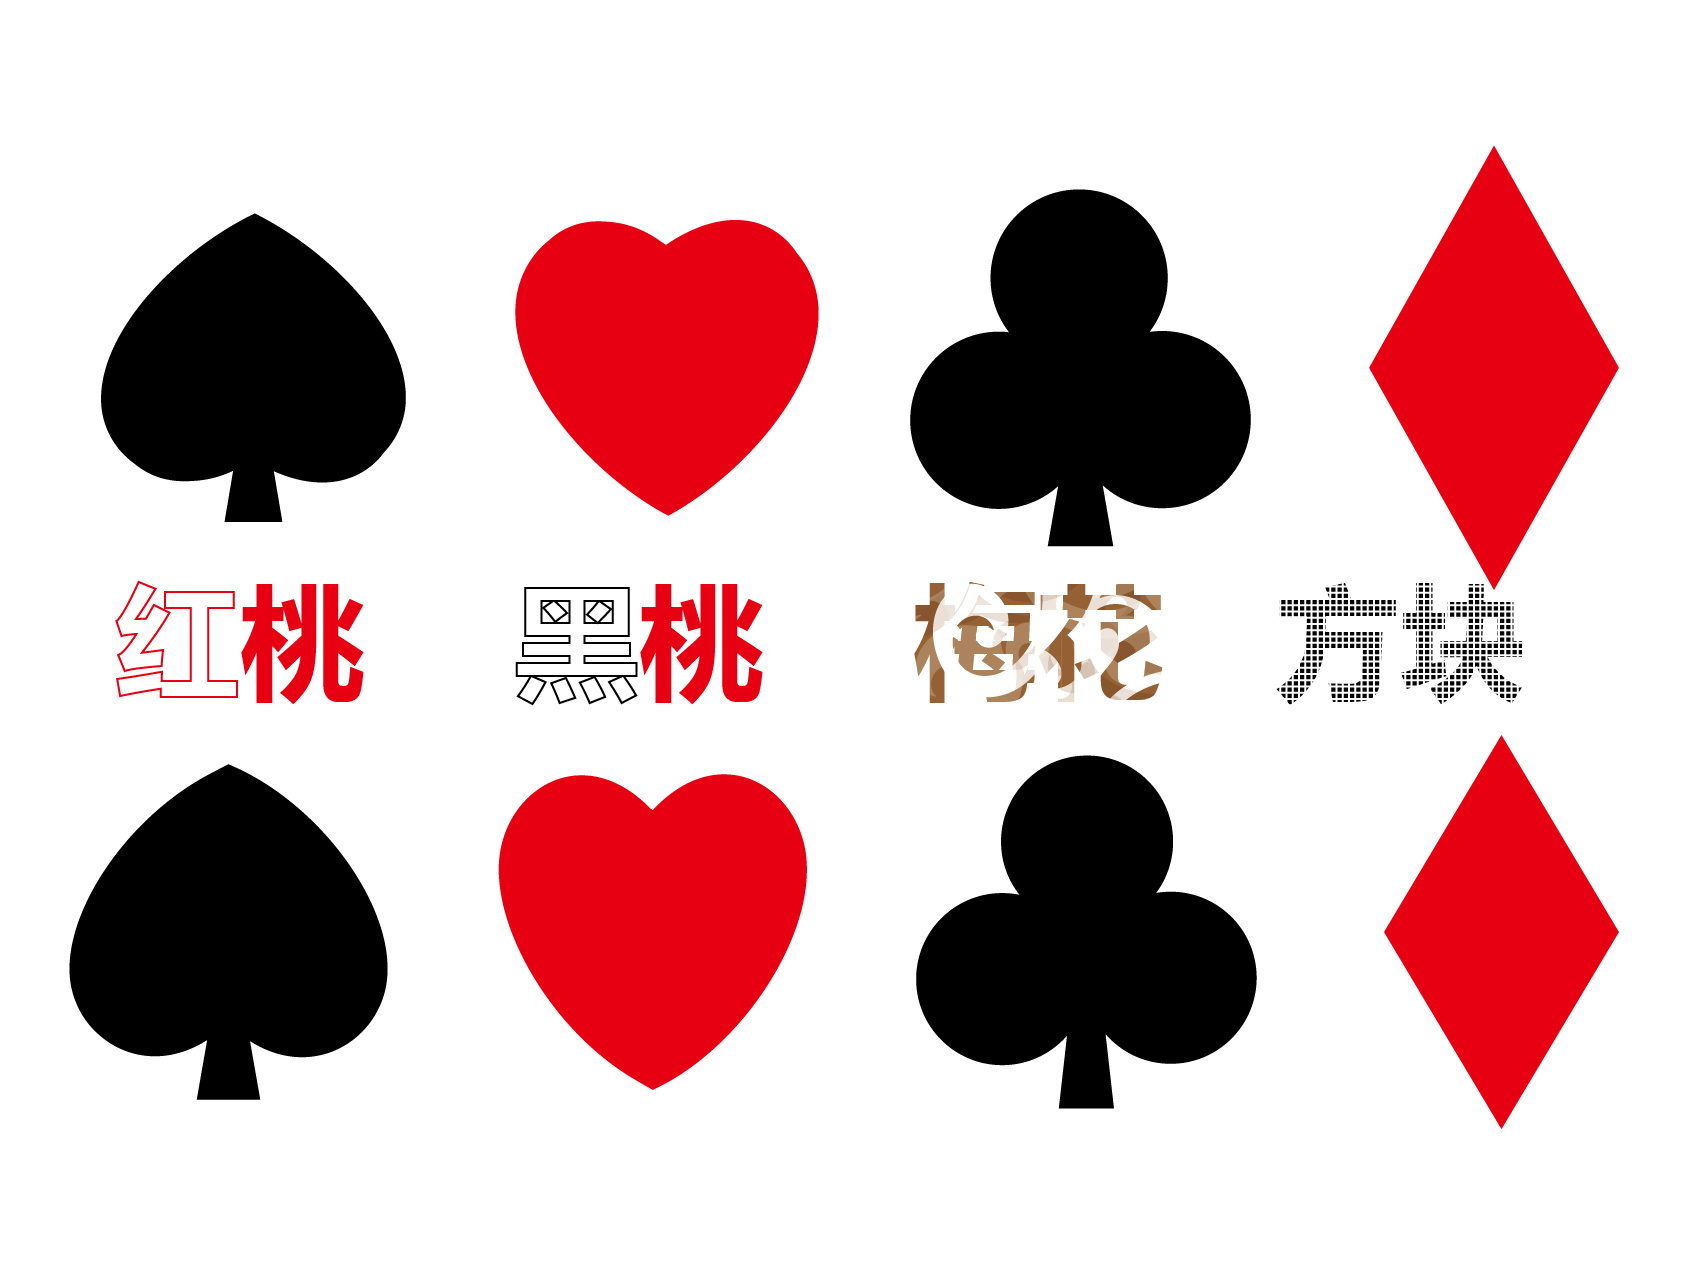 现货POK STAR 塑料牌扑克牌 红黑款 宽牌大字 PVC磨砂扑克-阿里巴巴